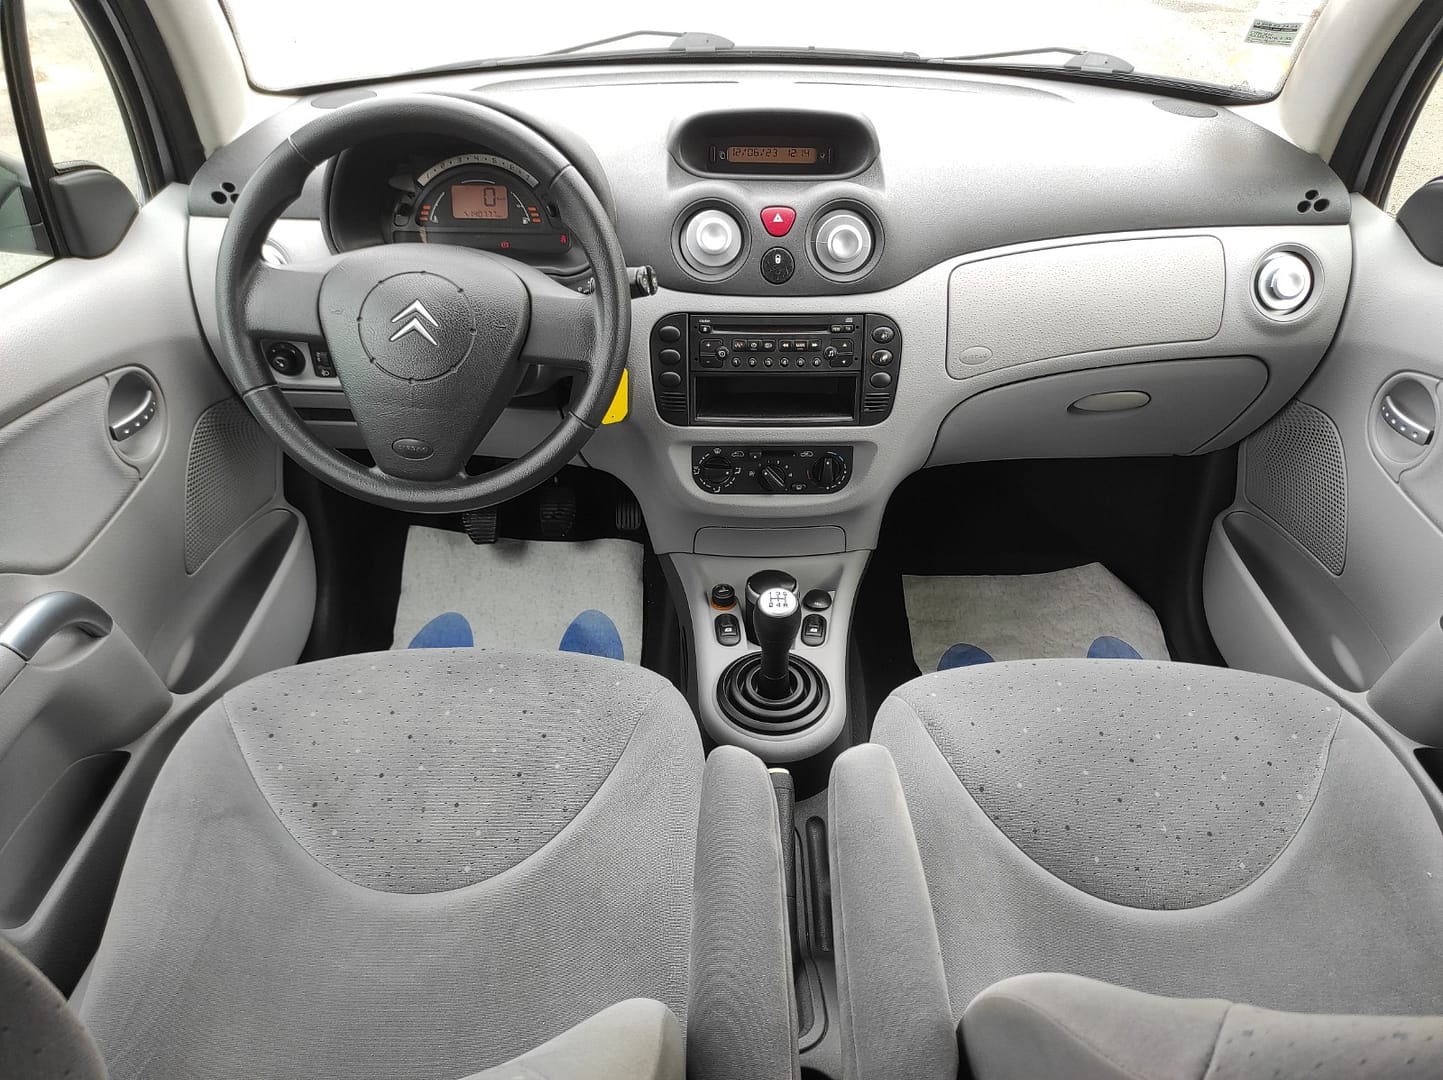 Citroën C3 2004 1.4 Pack Ambiance 5P - Automatix Motors - Voiture Occasion - Achat Voiture - Vente Voiture - Reprise Voiture